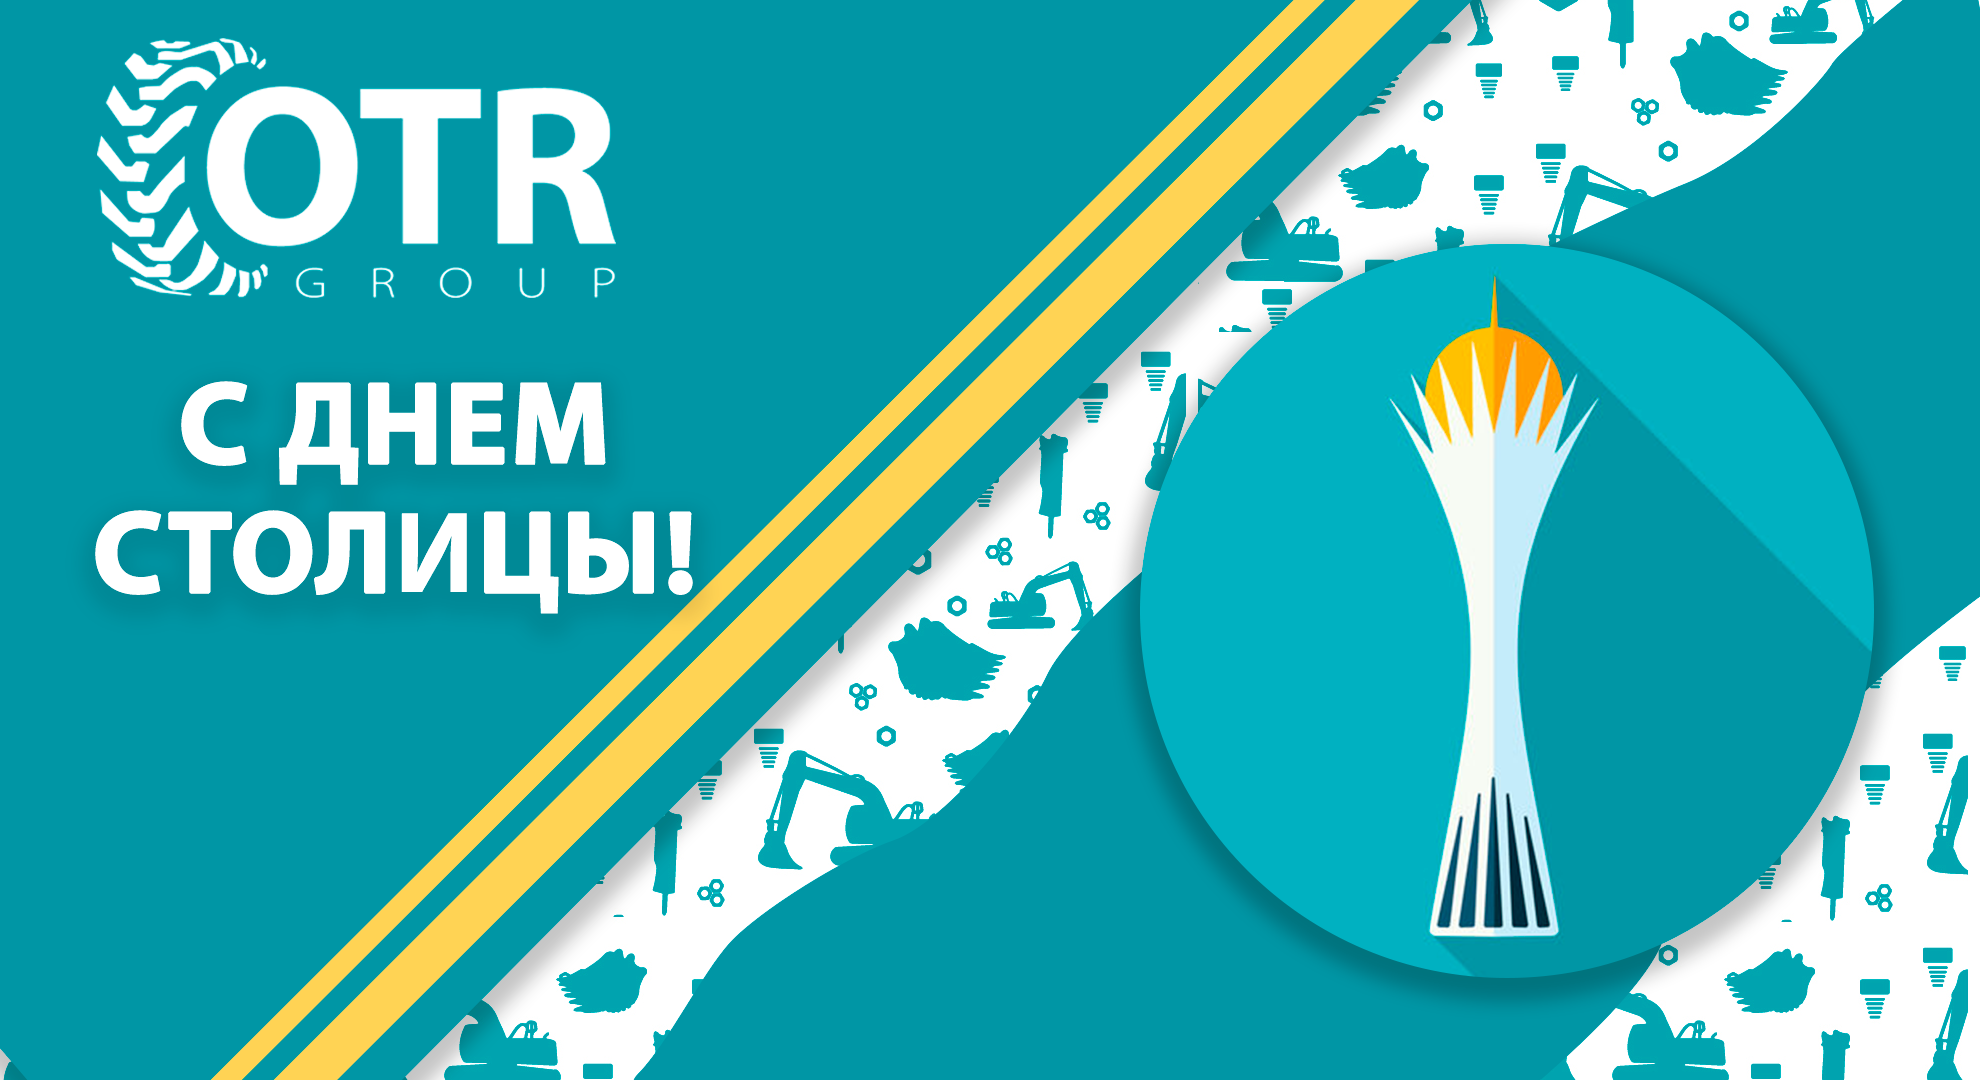 Дорогие коллеги, партнеры и клиенты, примите наши искренние поздравления с Днем Столицы Республики Казахстан!